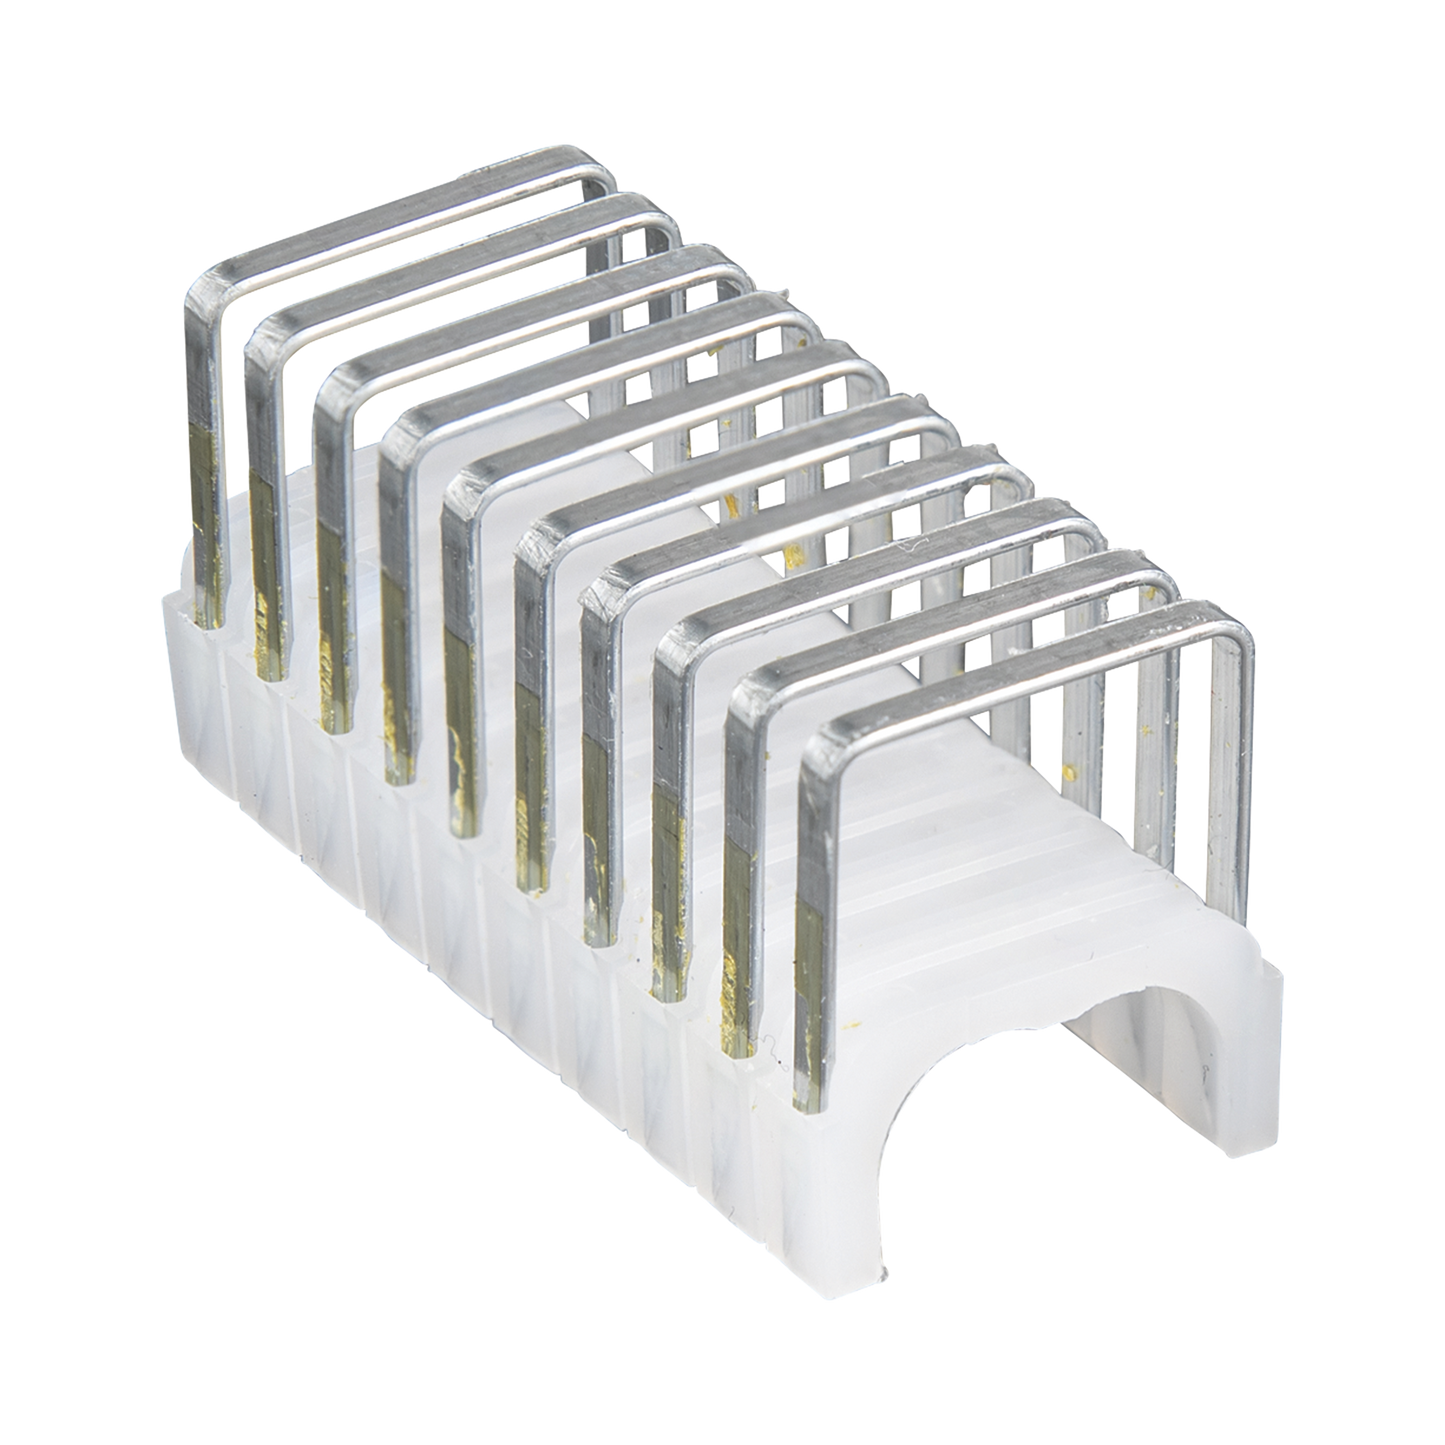 Paquete de 300 Grapas con Aislamiento,  para Cables NM (Romex®) como 14/3, 14/3G, 12/3 y otros cables de hasta 11/32'' × 19/32'' (9 mm × 15 mm).